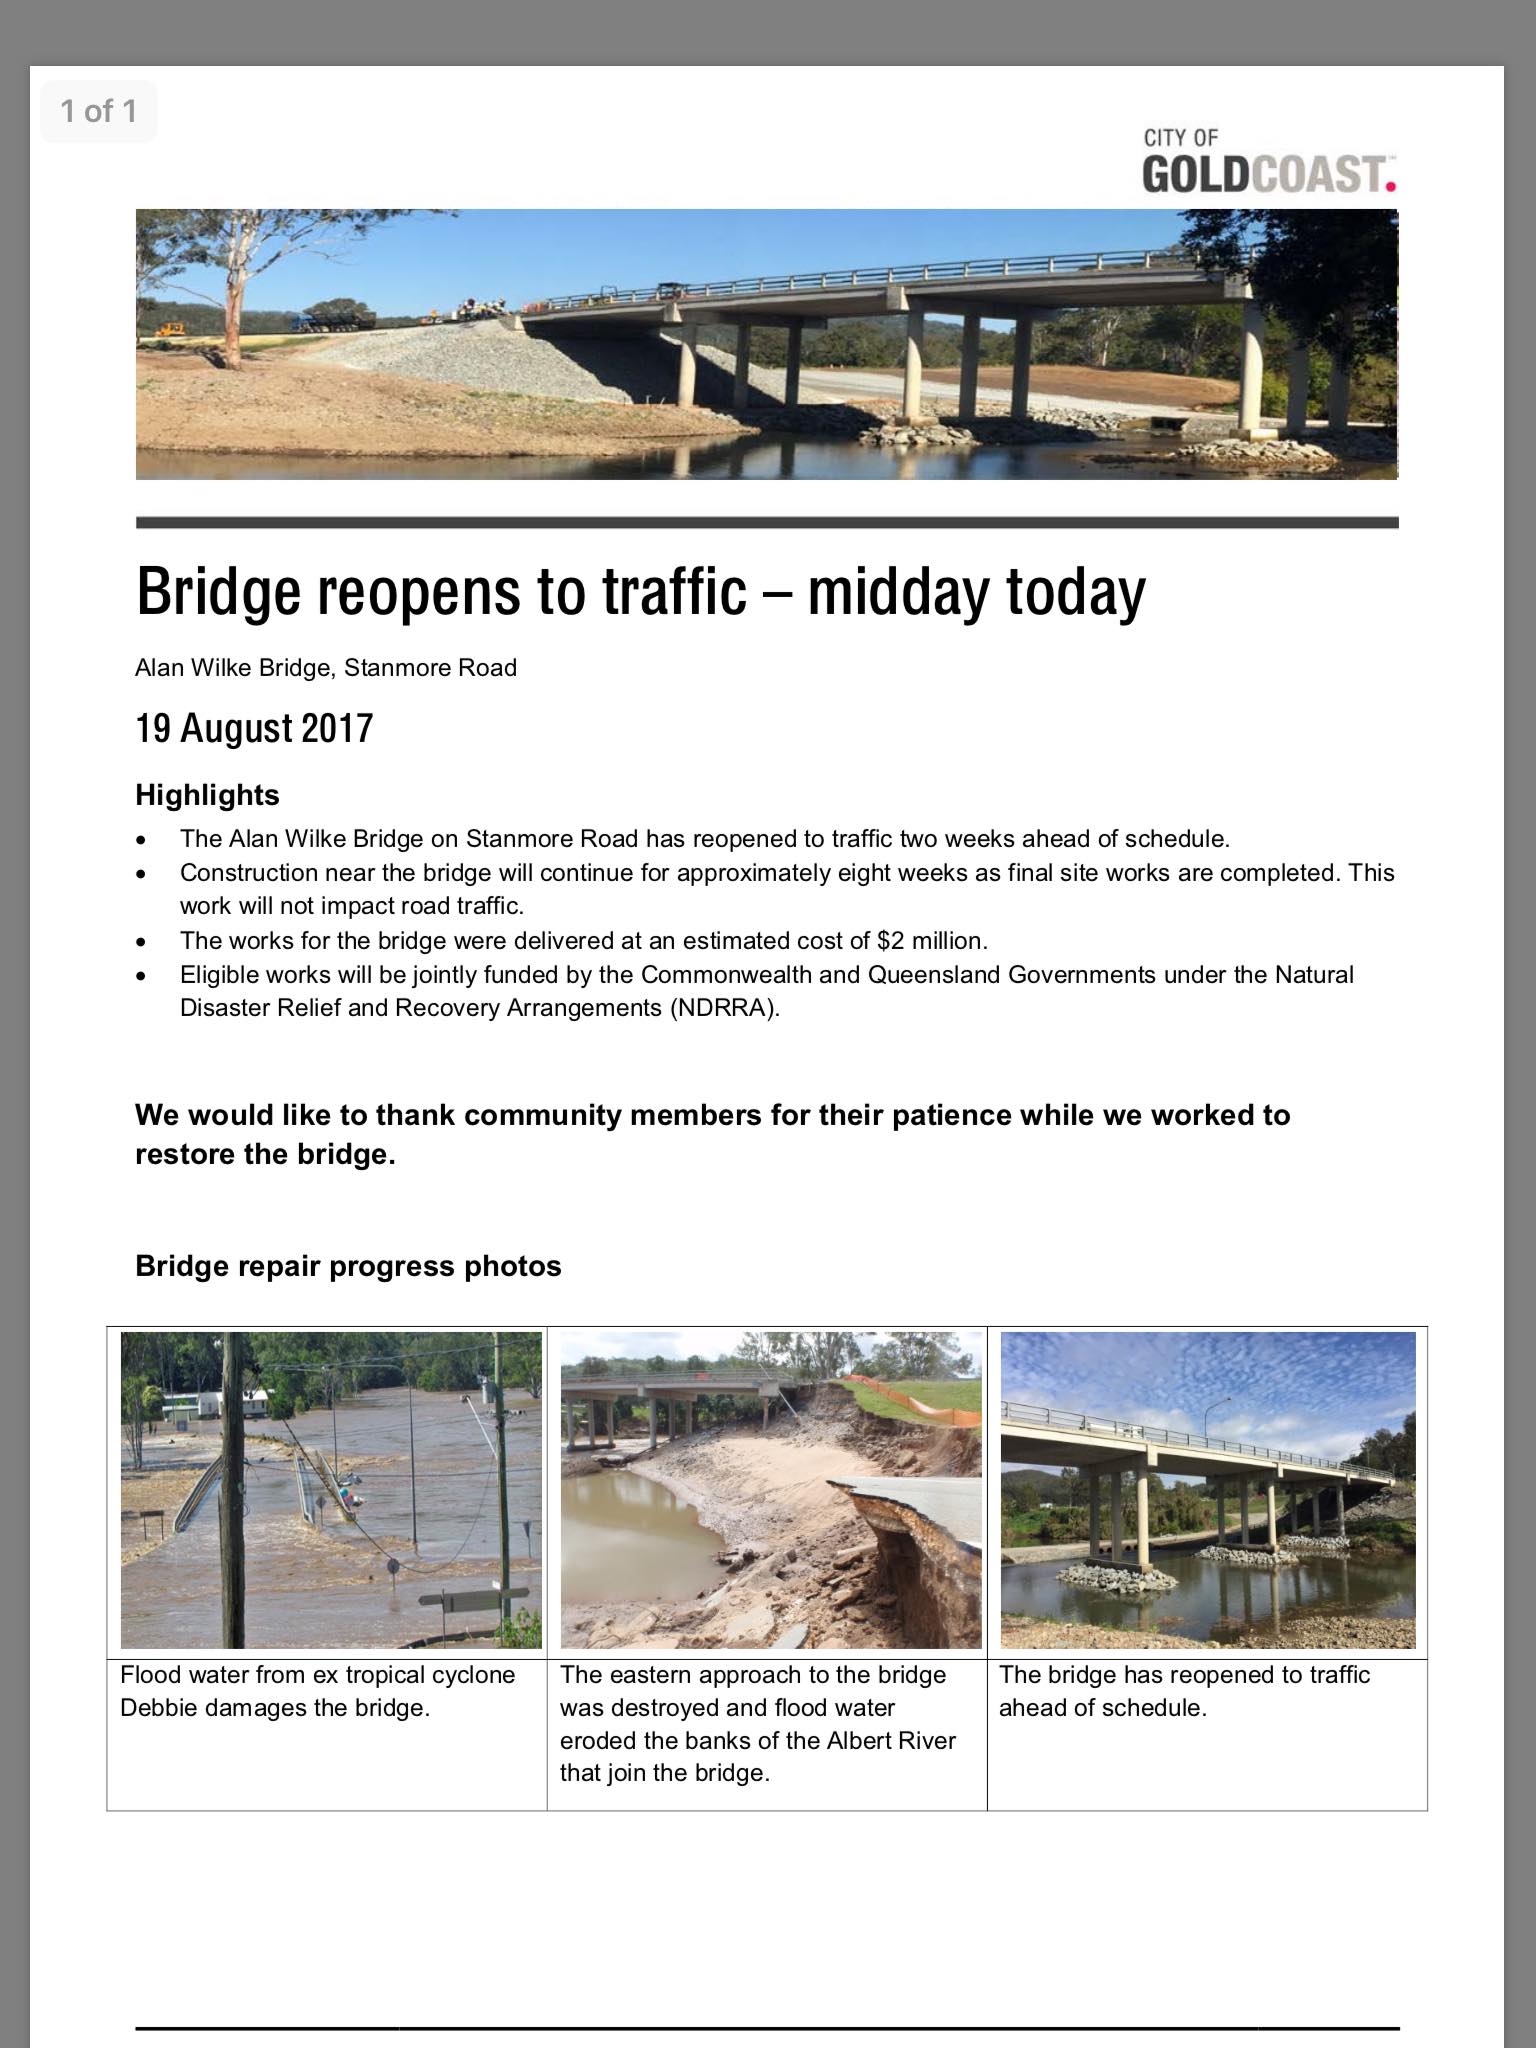 Alan Wilke Bridge Re-Opens